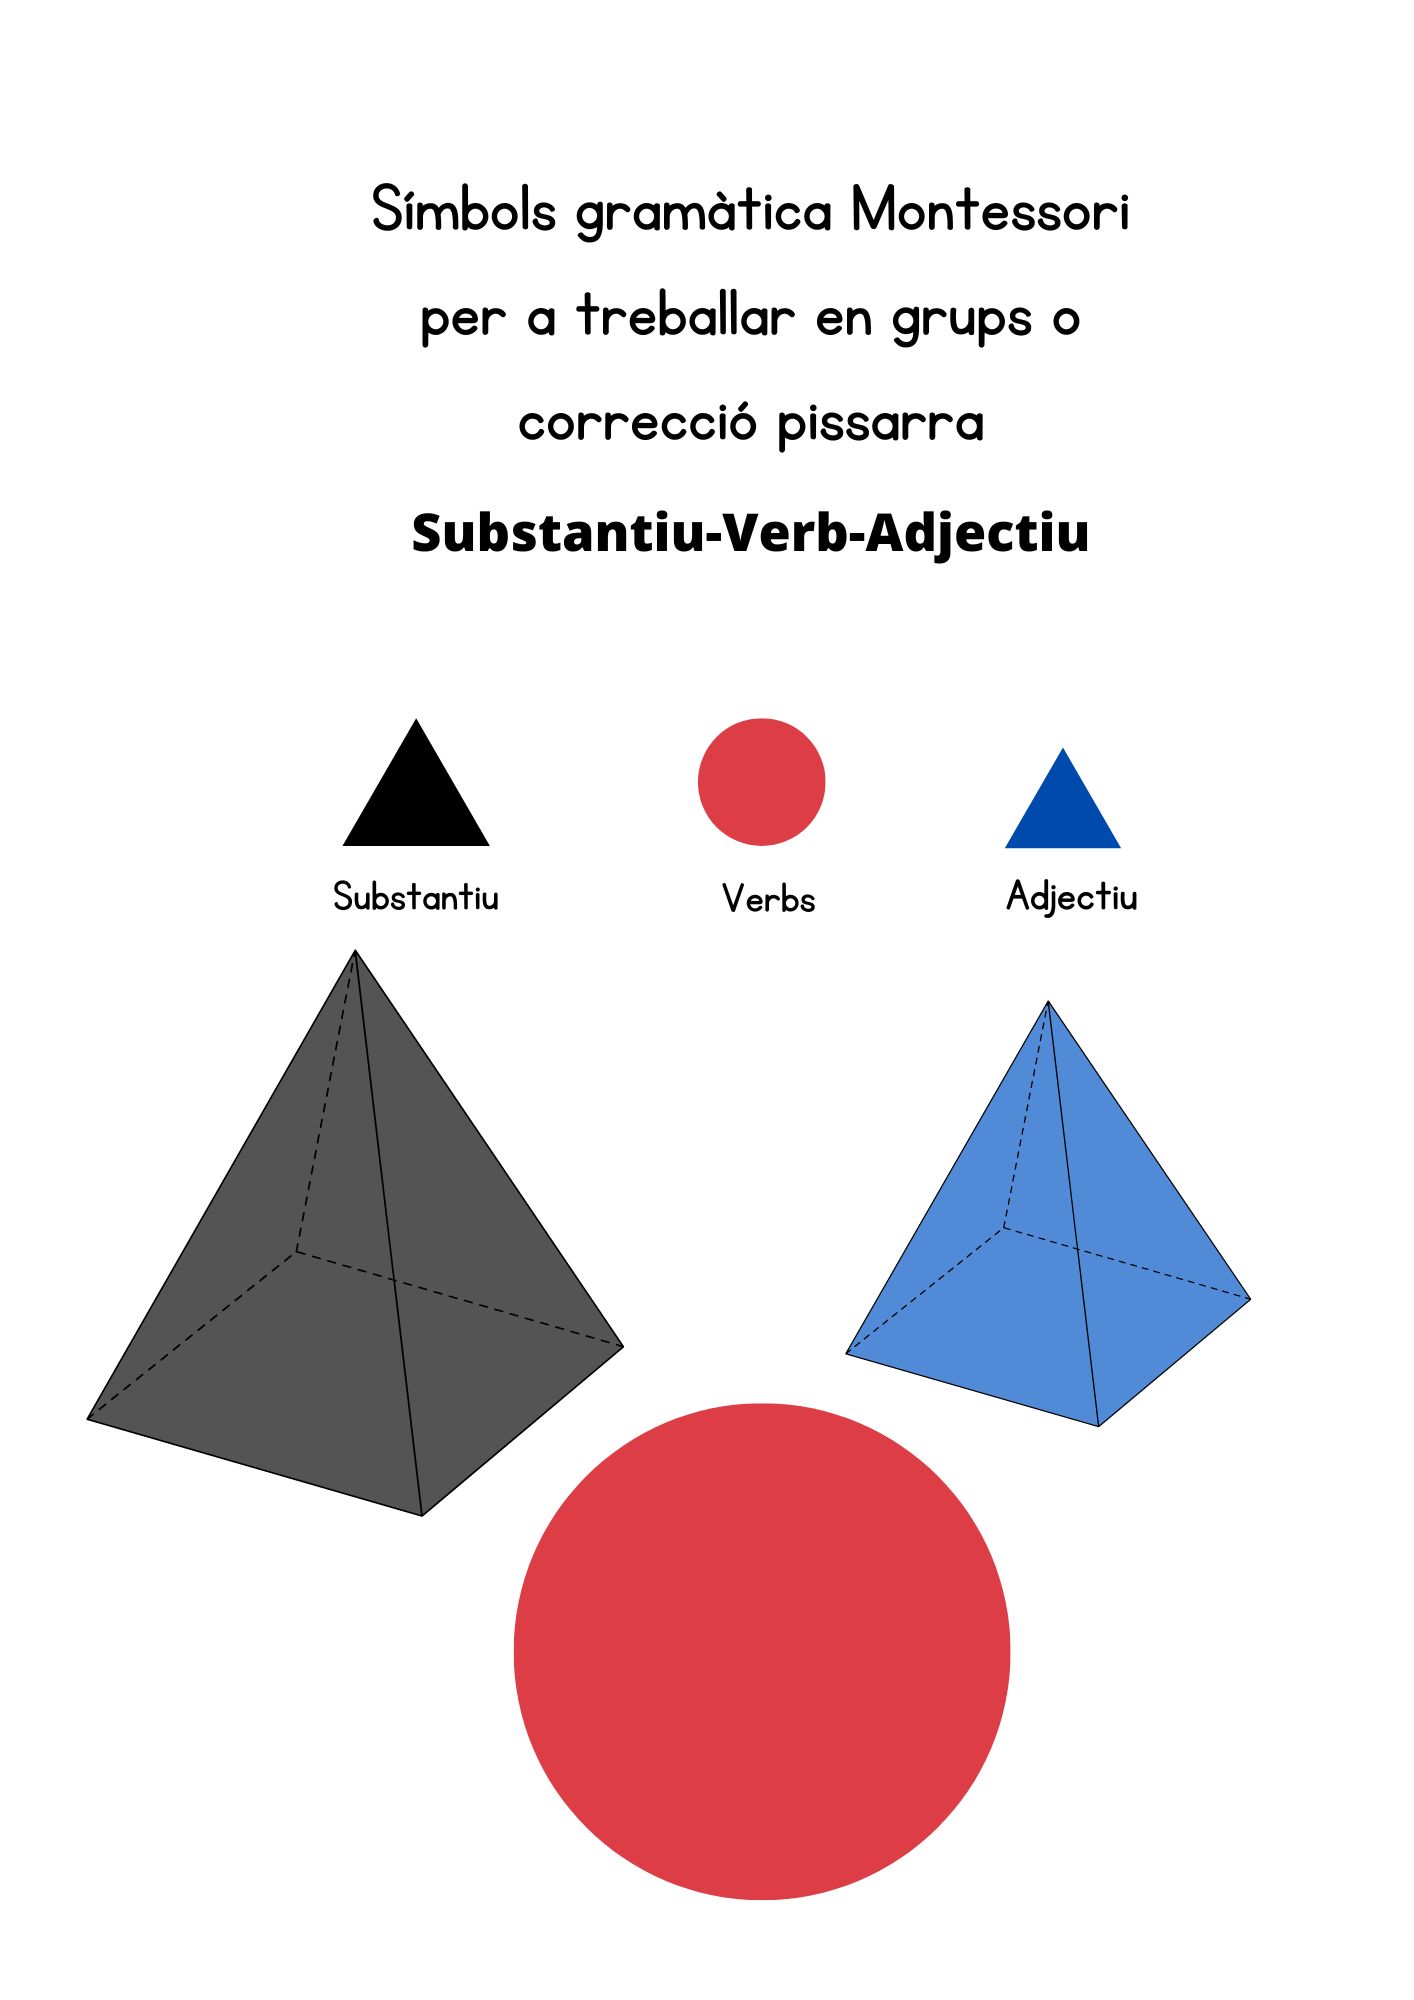 Símbols gramàtica Montessori (Subst-V-Adj.)